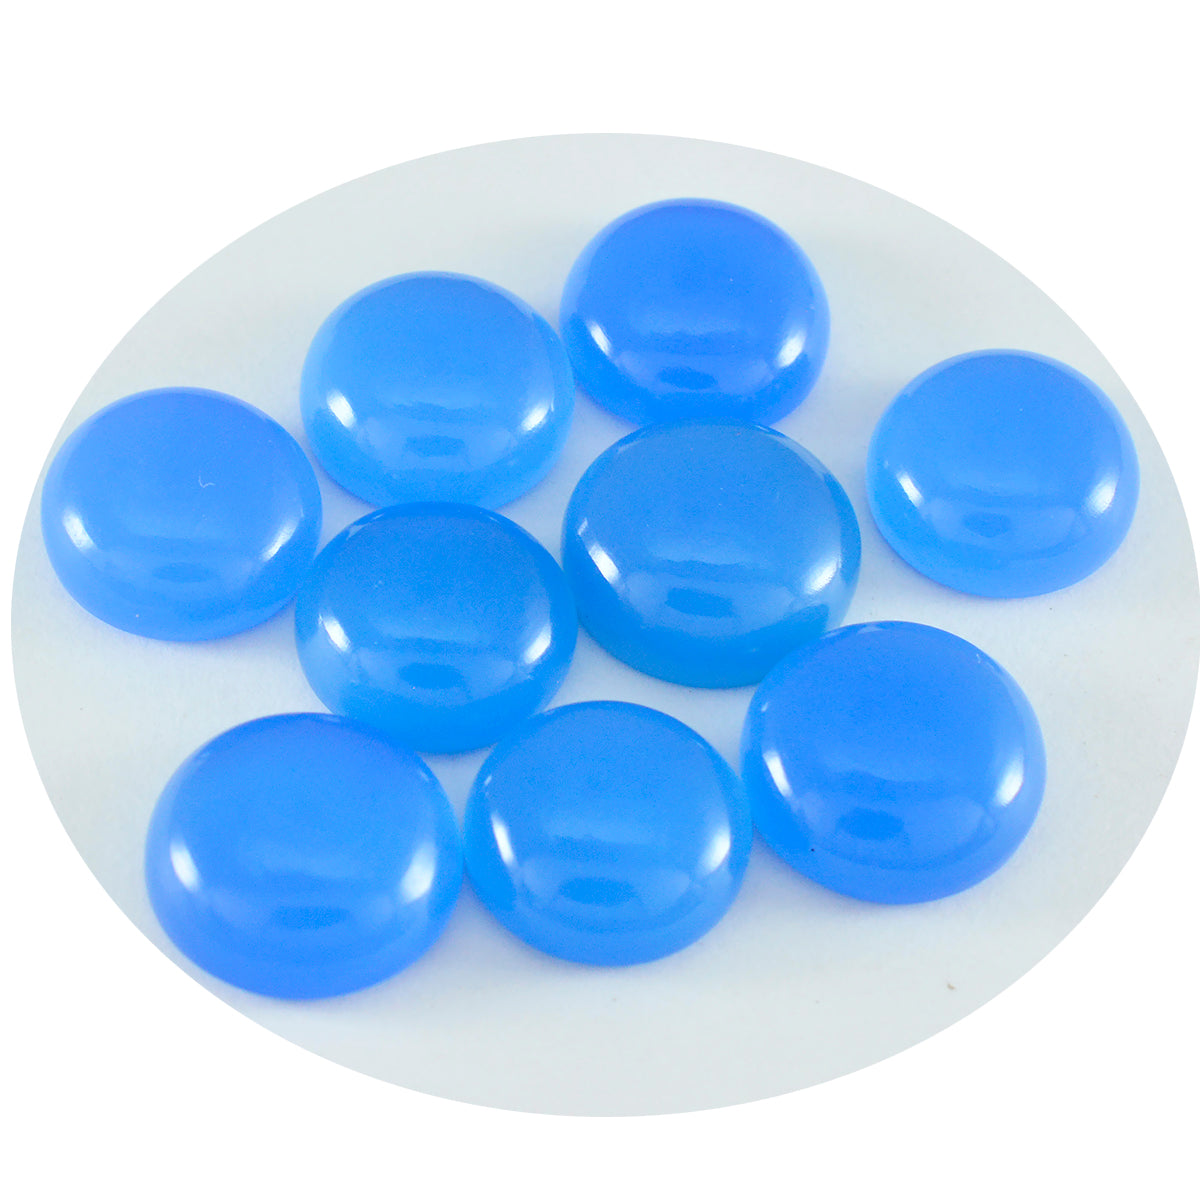 Riyogems 1 Stück blauer Chalcedon-Cabochon, 6 x 6 mm, runde Form, hochwertige Edelsteine